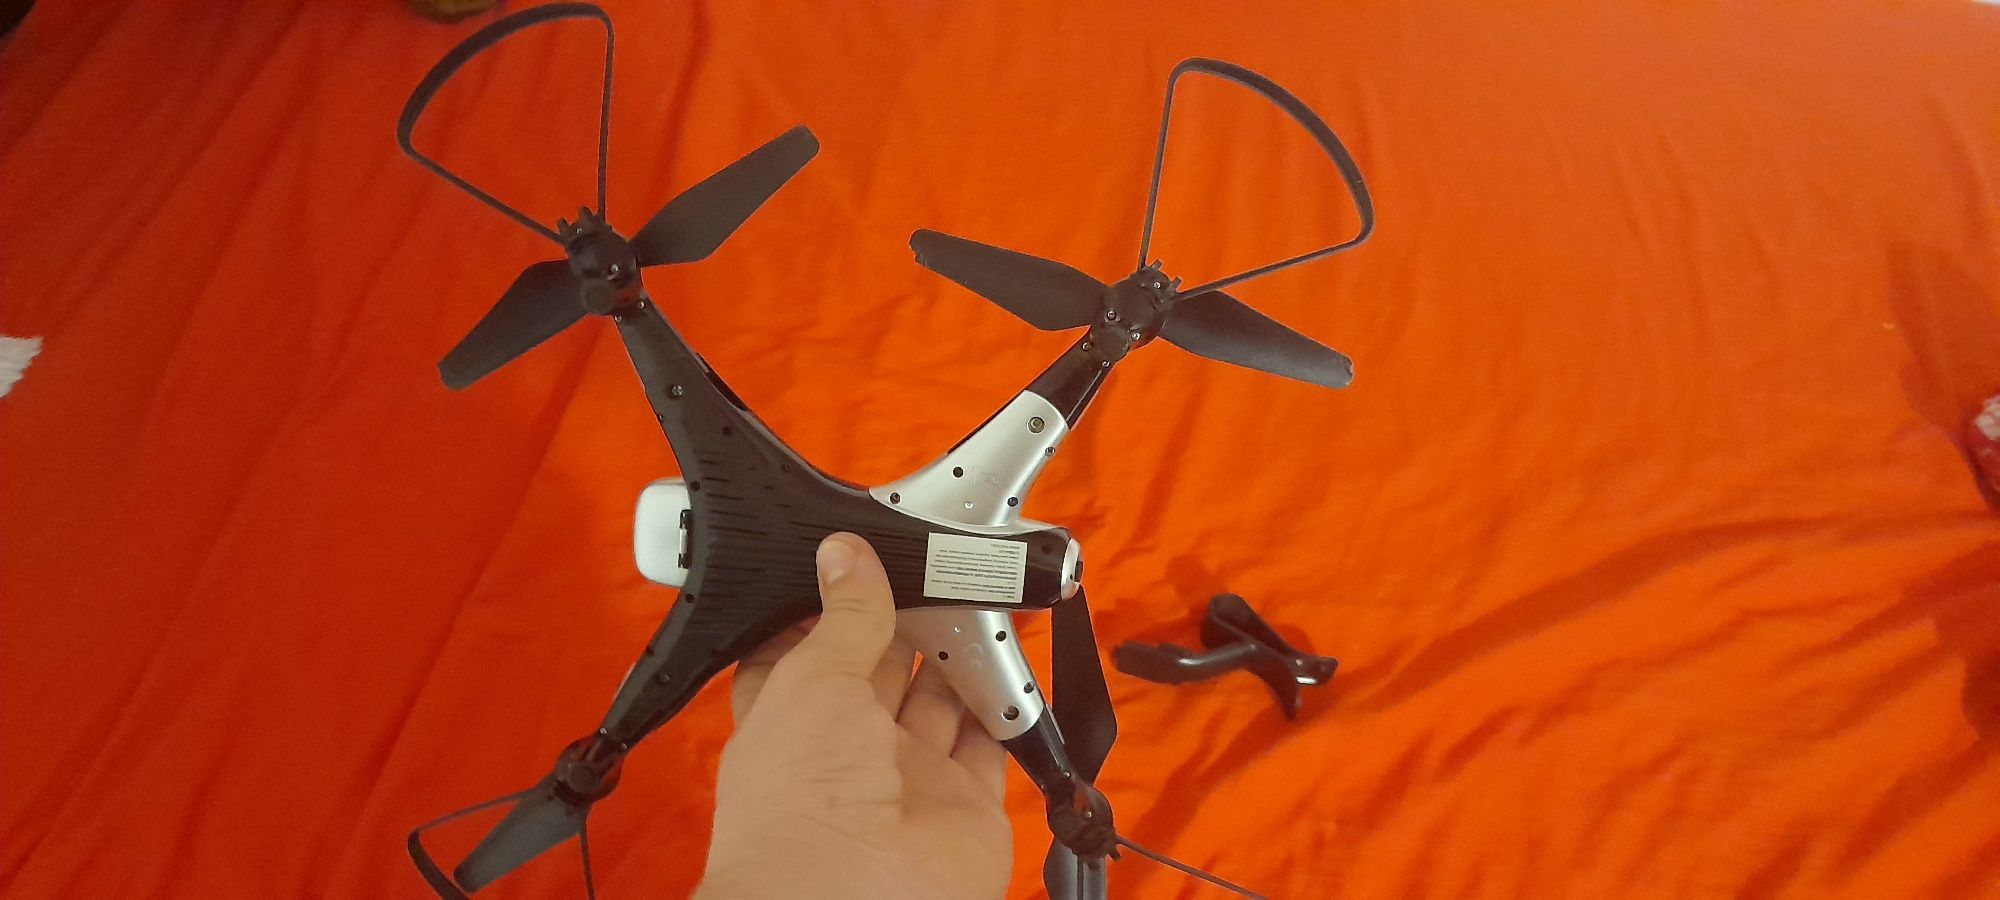 Vând drona suma z3